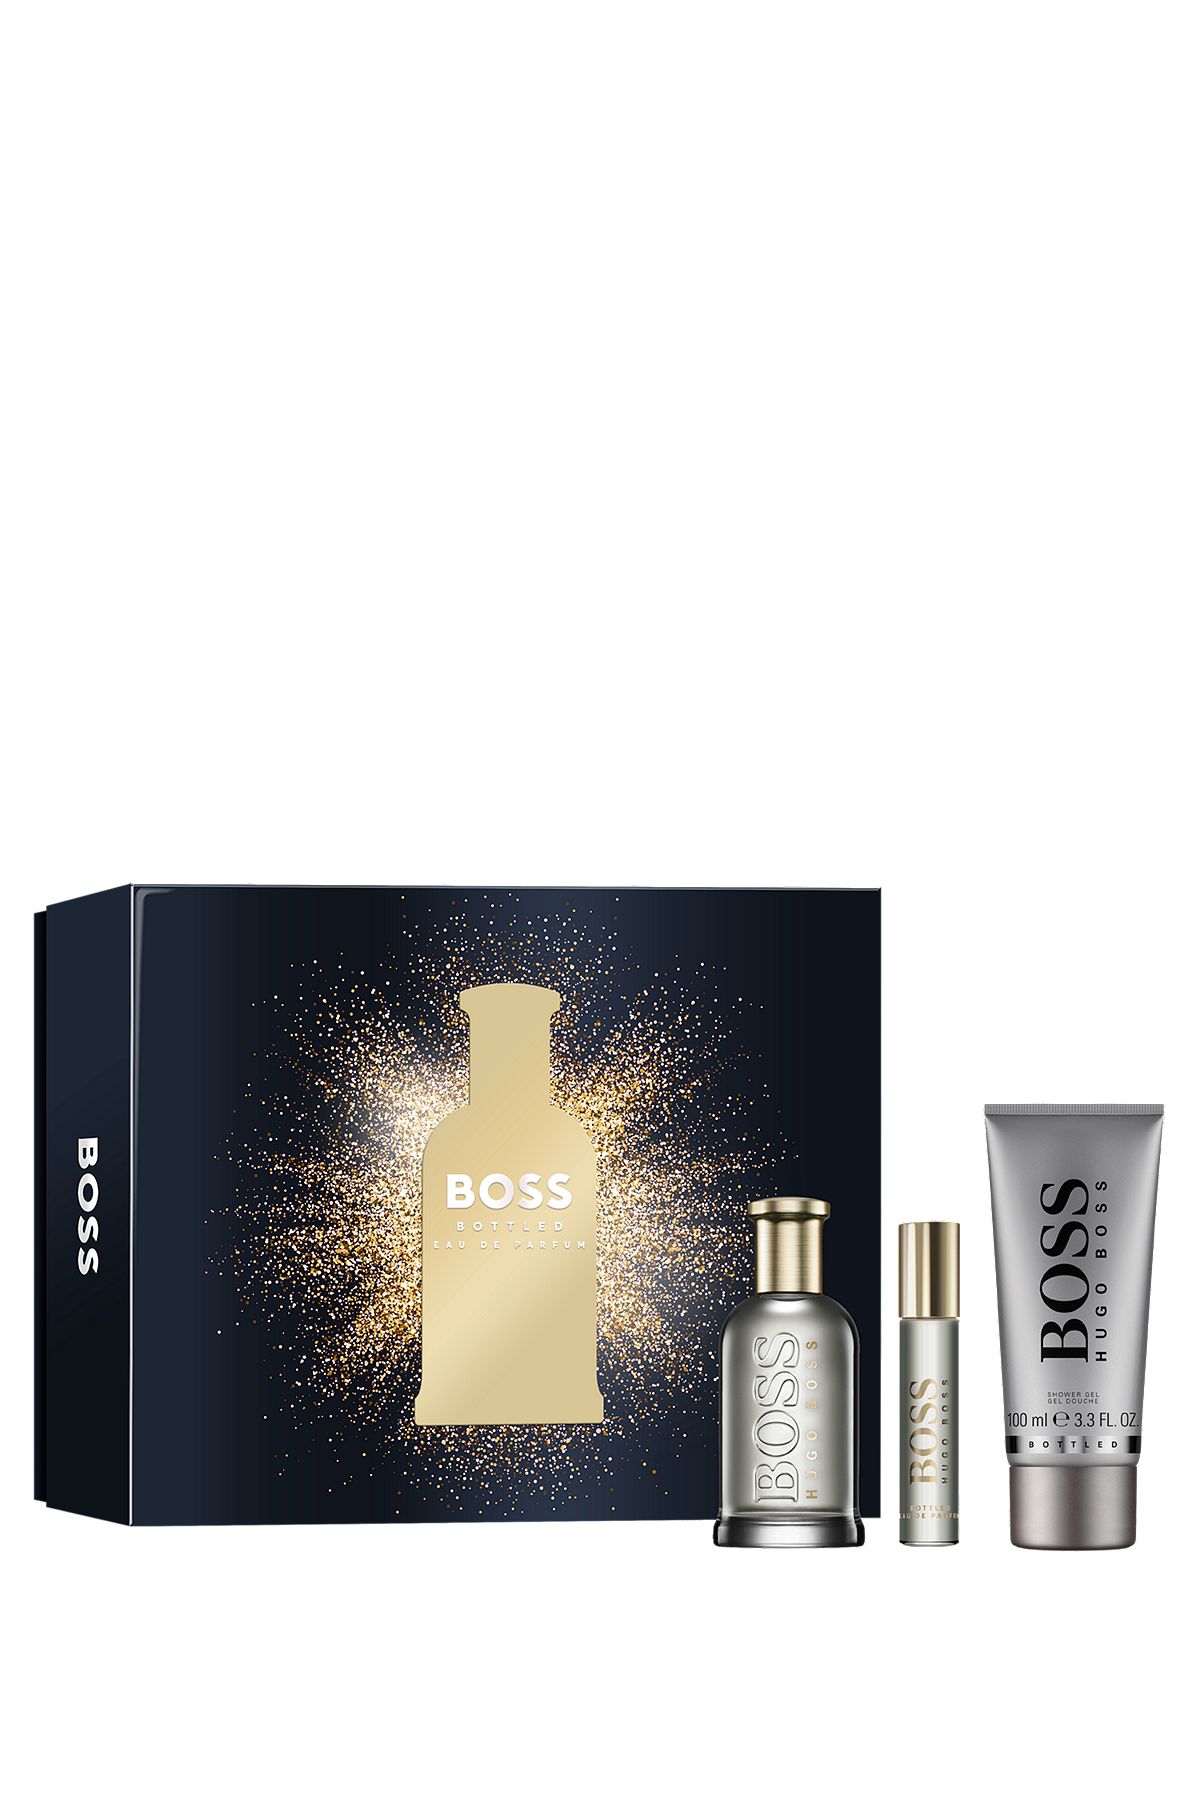 BOSS Bottled fragrance gift set, Assorted-Pre-Pack